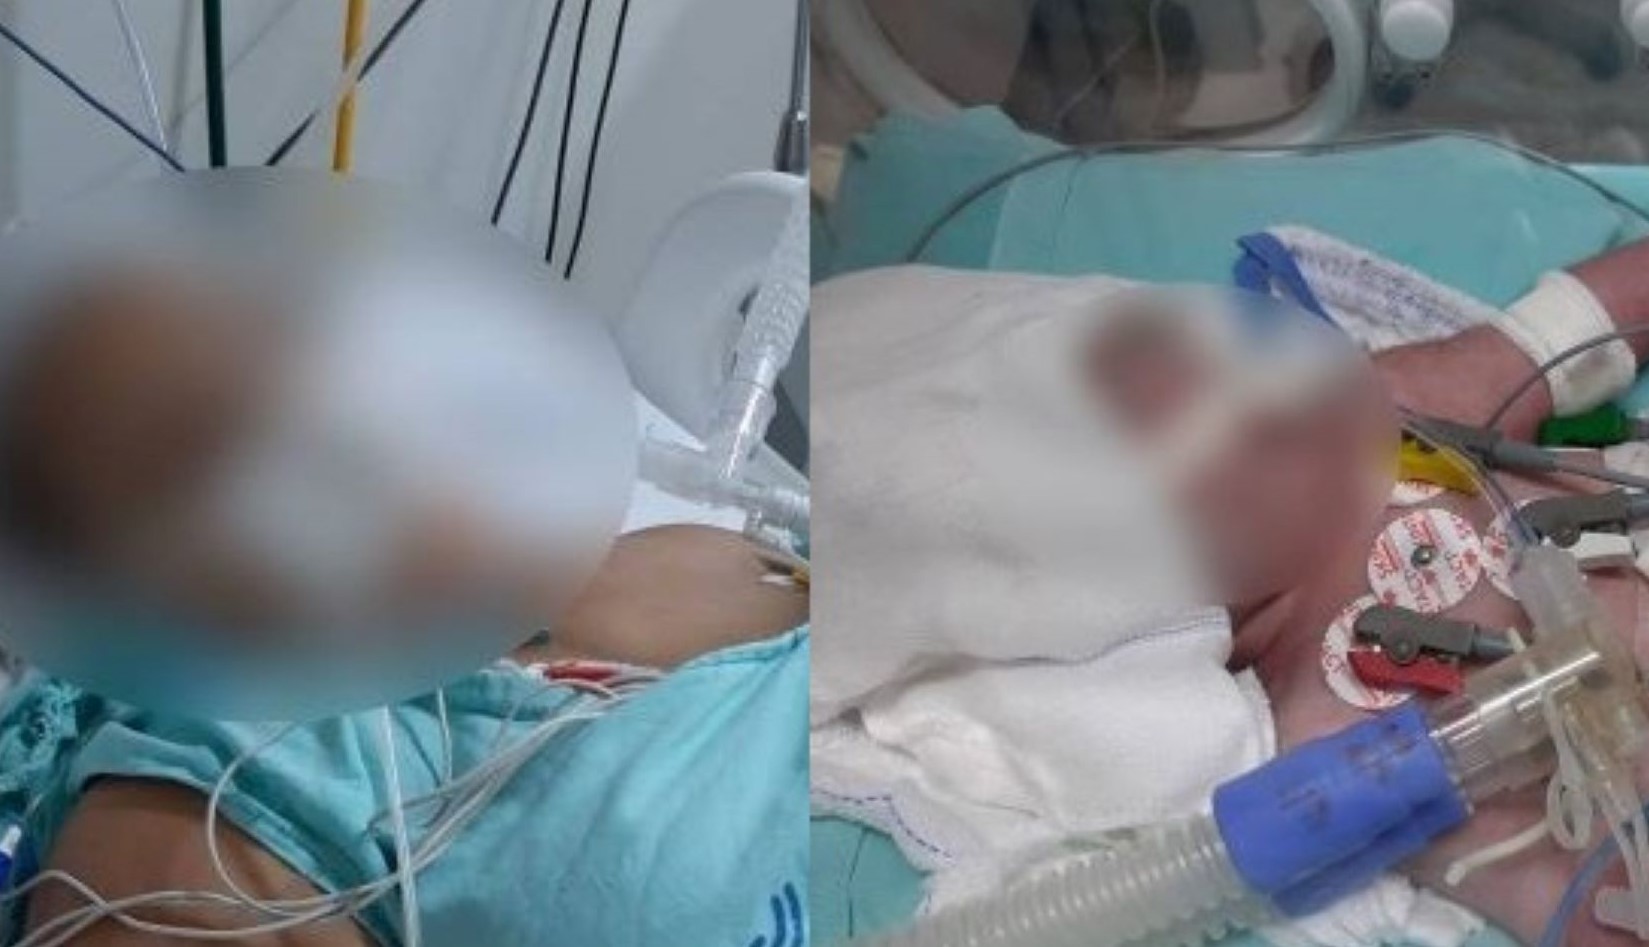 Rondonópolis | Hospital admite que criança teve couro cabeludo arrancado durante o parto